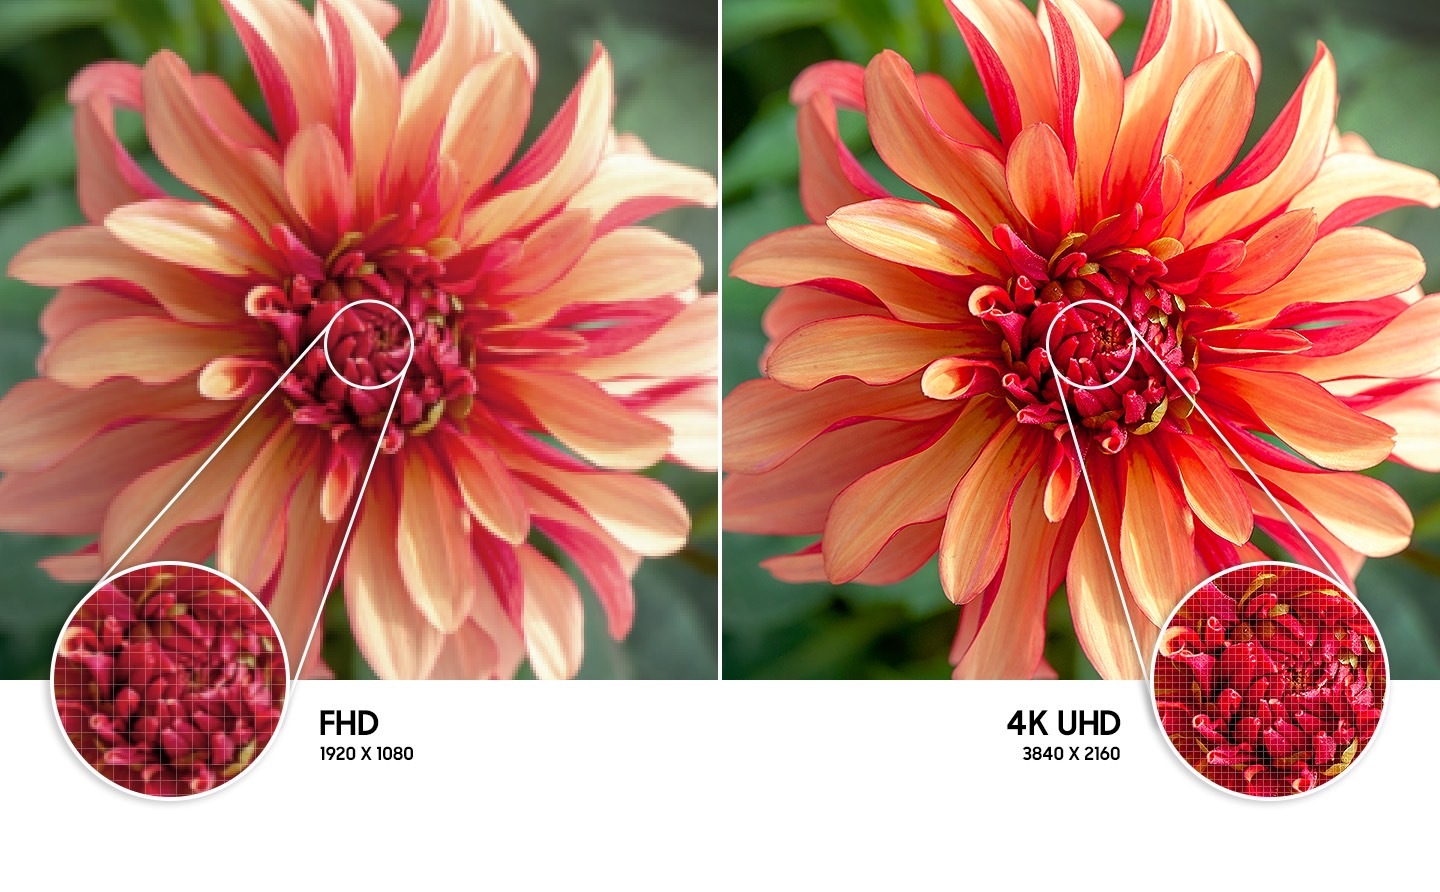 Cvjetna slika s desne strane u odnosu na lijevu prikazuje kvalitetniju rezoluciju slike stvorenu 4K UHD tehnologijom.